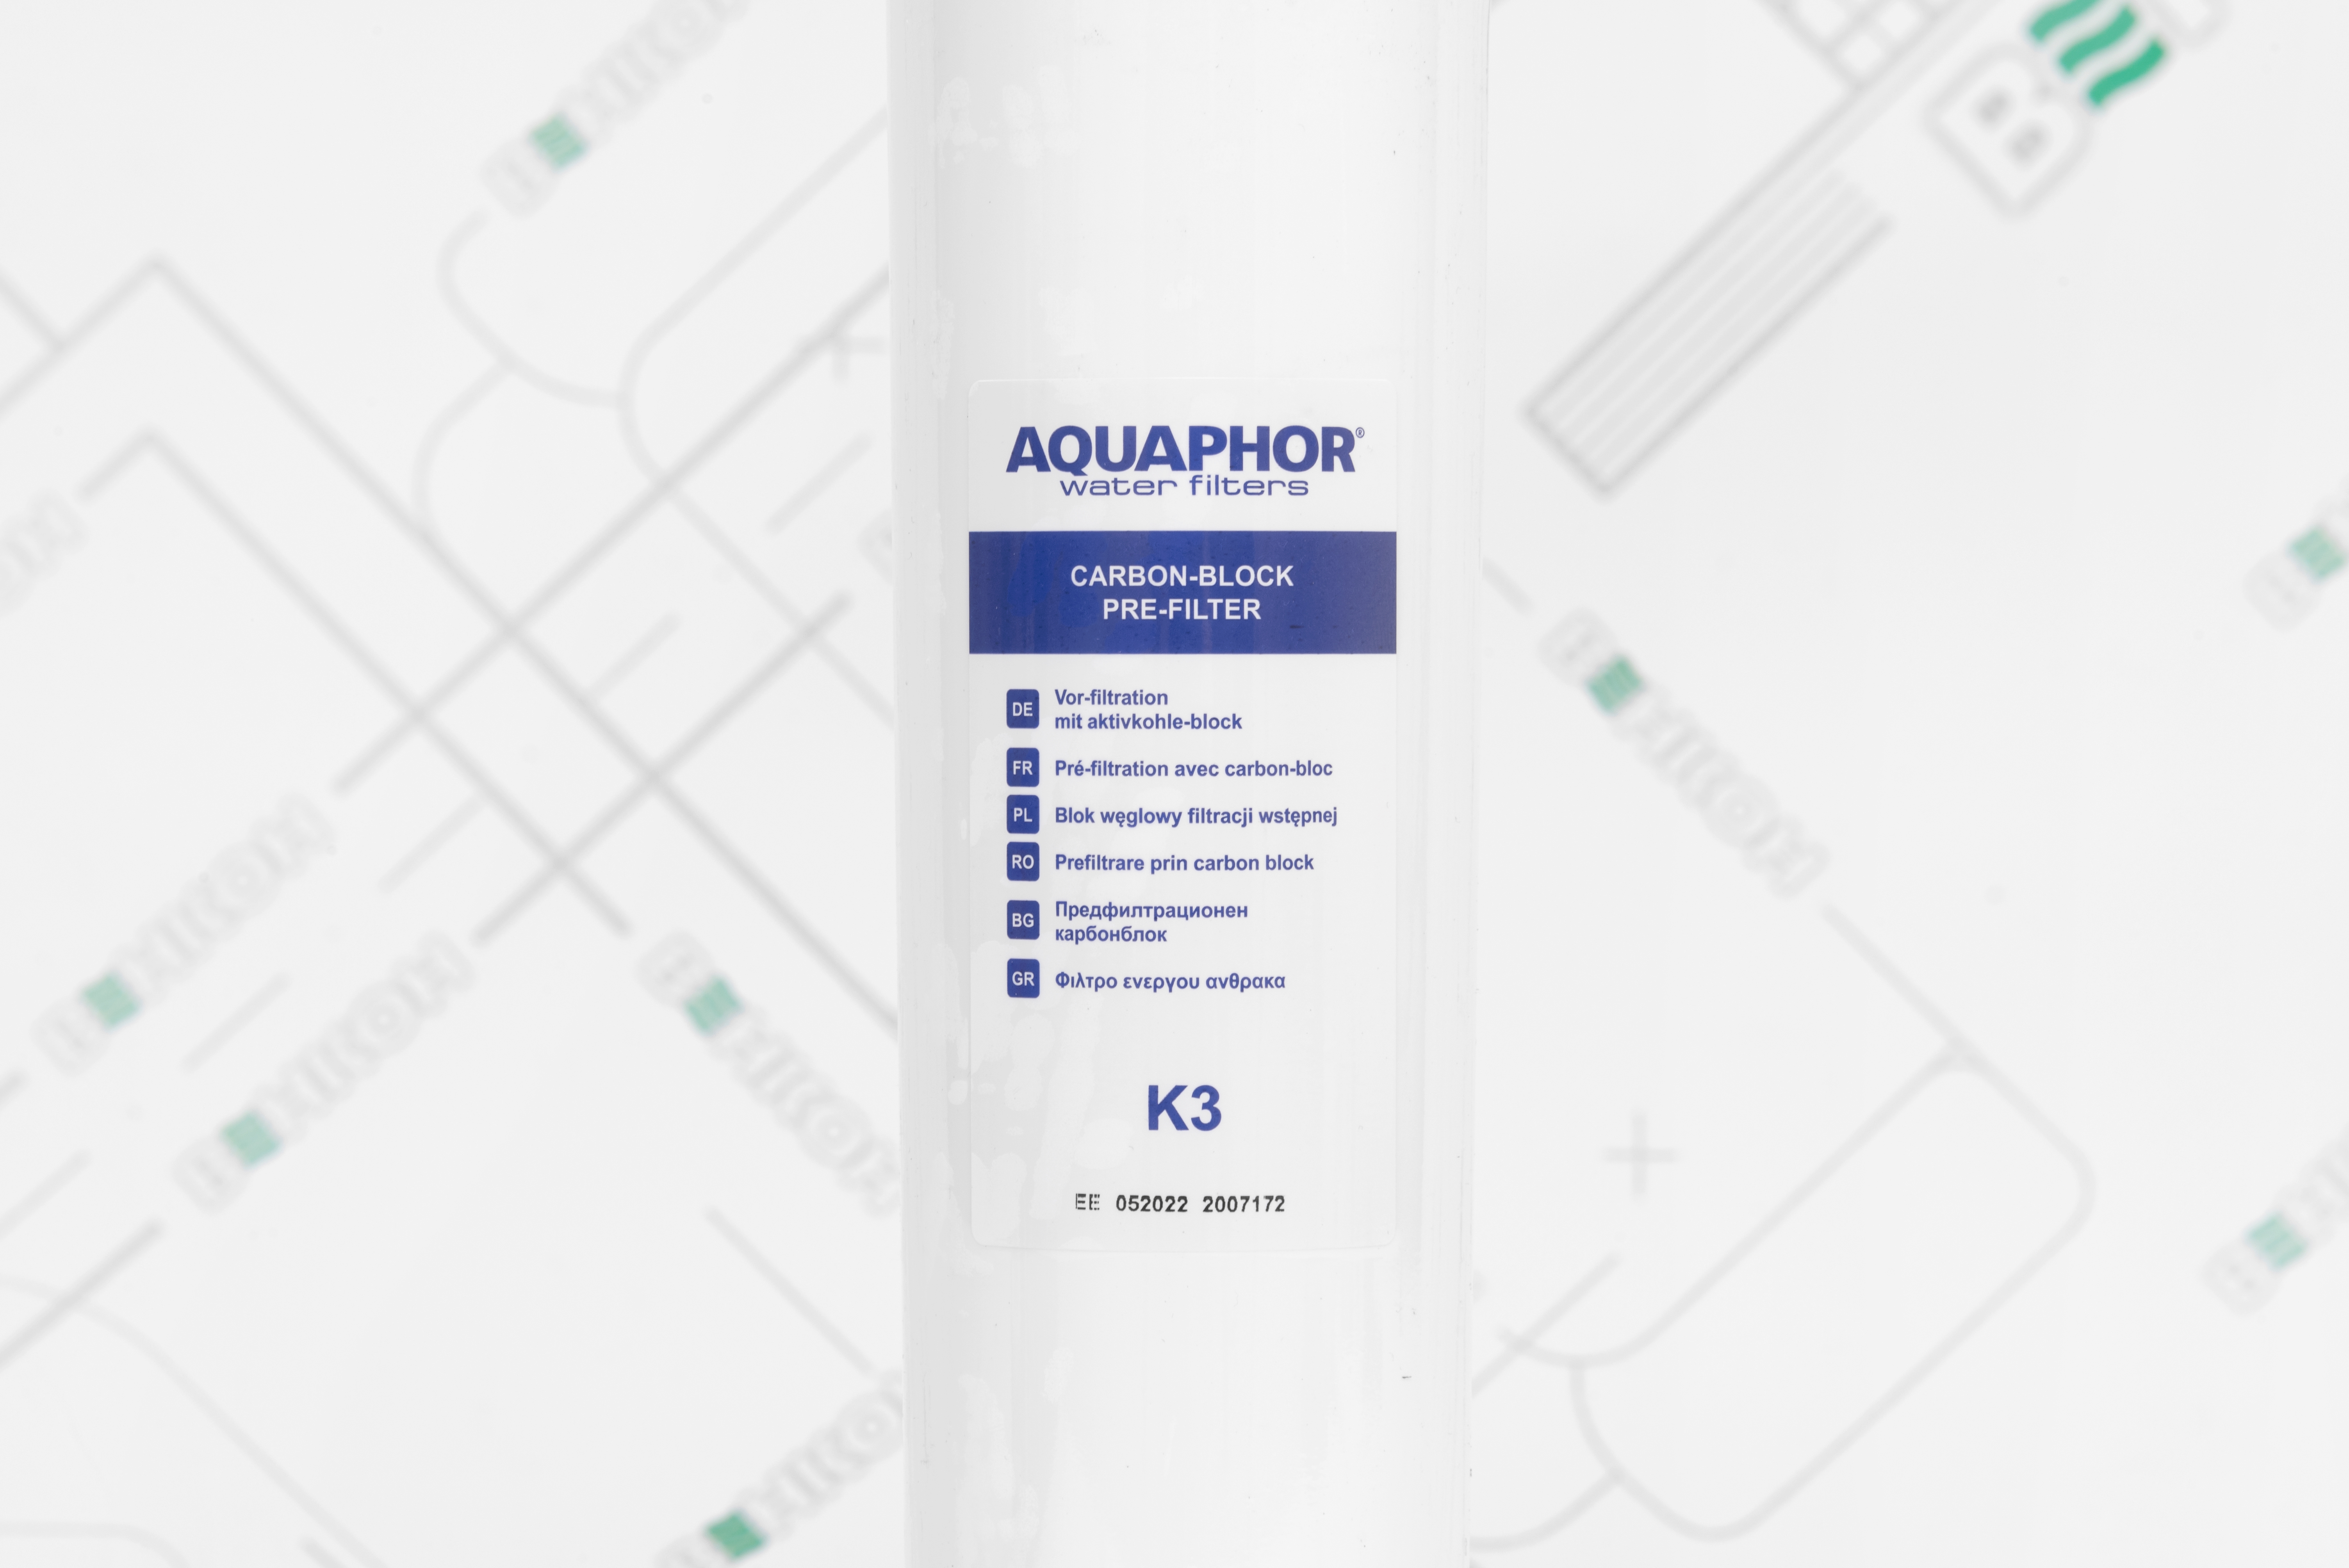 продаём Aquaphor K3 (уголь)  в Украине - фото 4